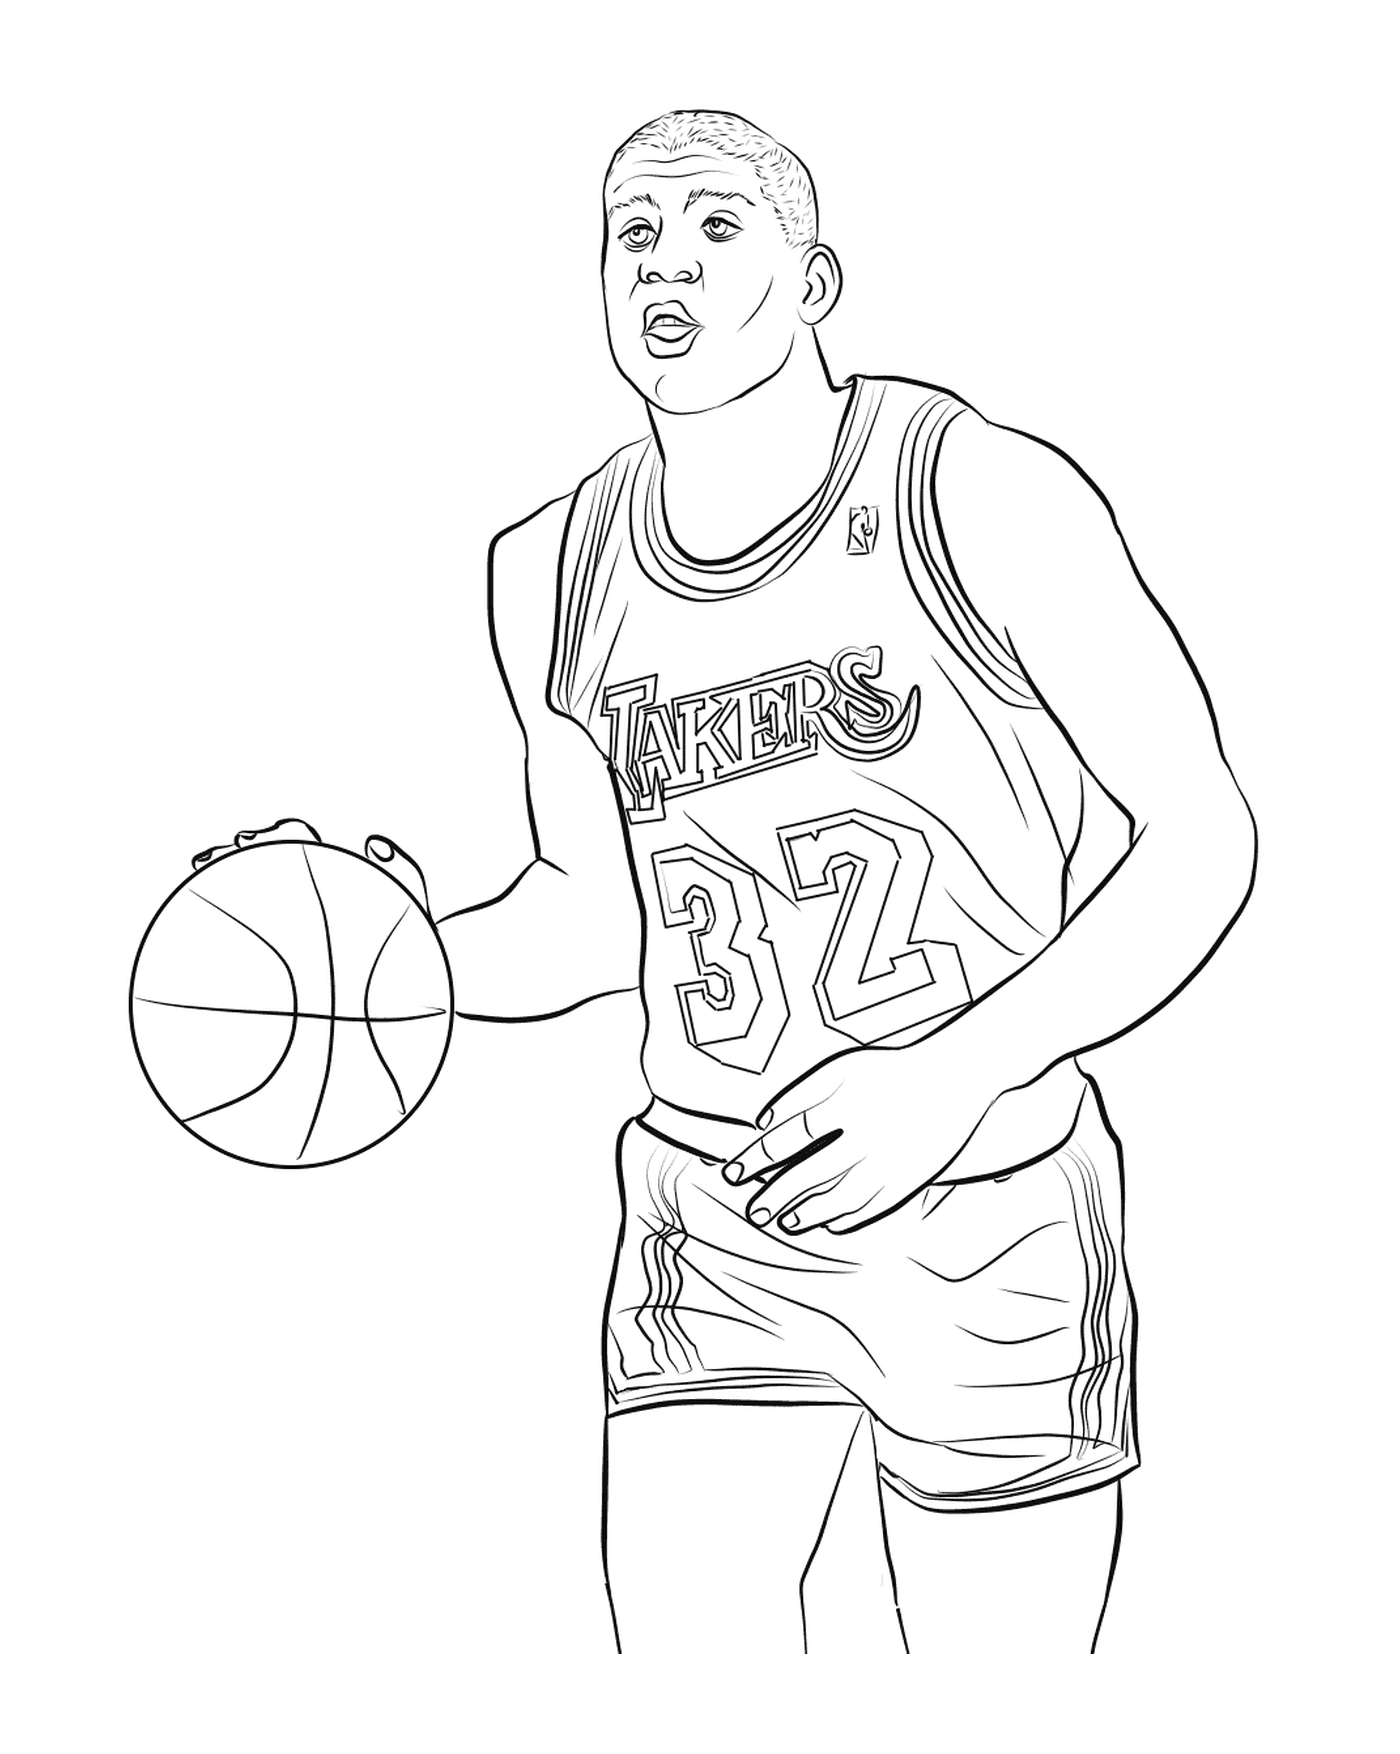  魔术约翰逊,篮球运动员 